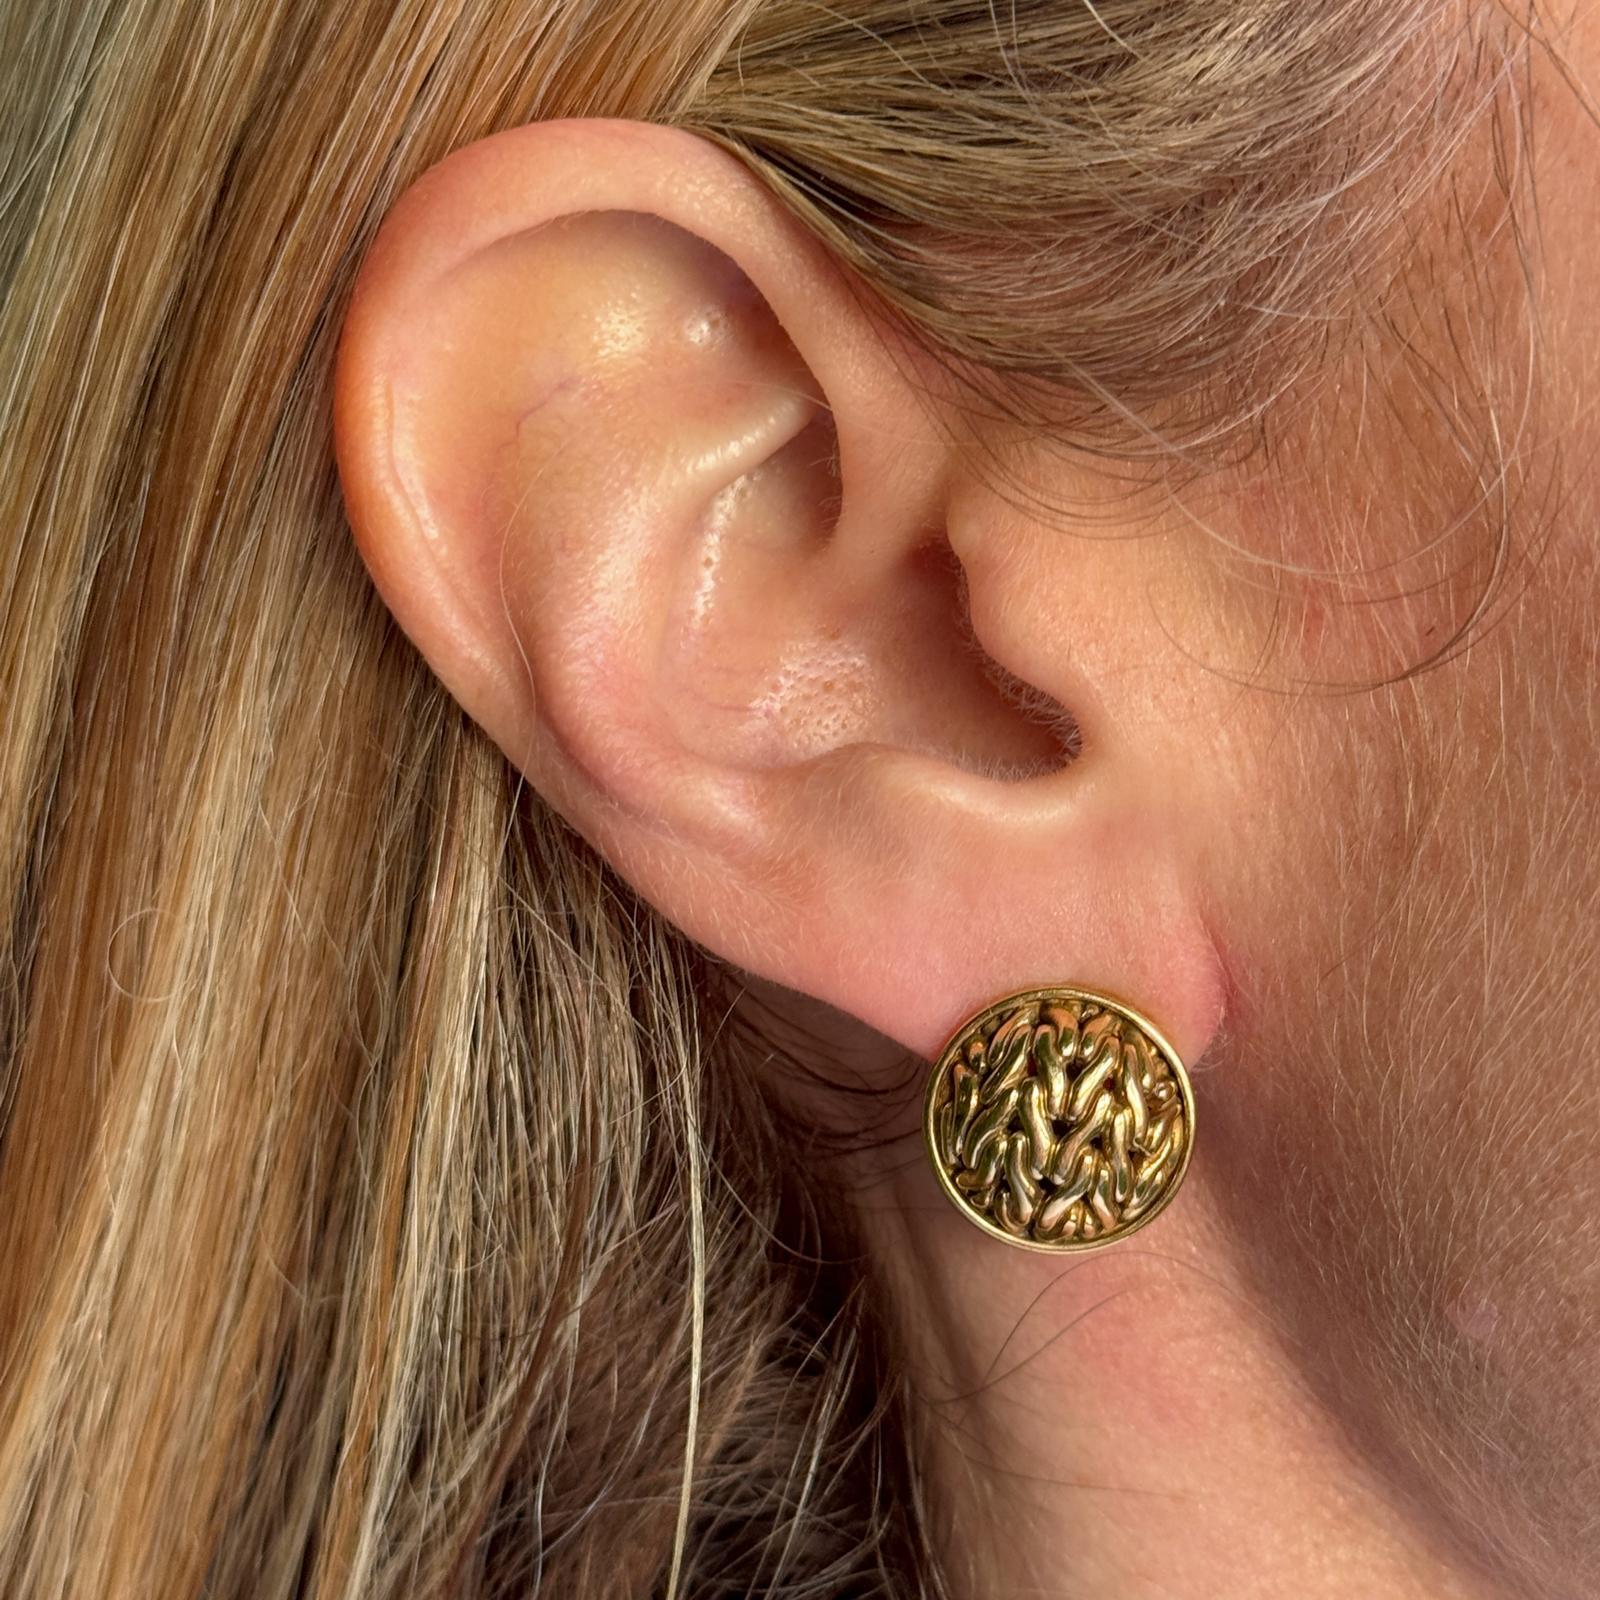 John Hardy Knopf-Ohrringe aus 18 Karat strukturiertem Gelbgold. Die Ohrringe haben einen Durchmesser von 15 mm und sind mit Hebelverschlüssen versehen. Signiert JH 18K. Gewicht: 10,3 Gramm.